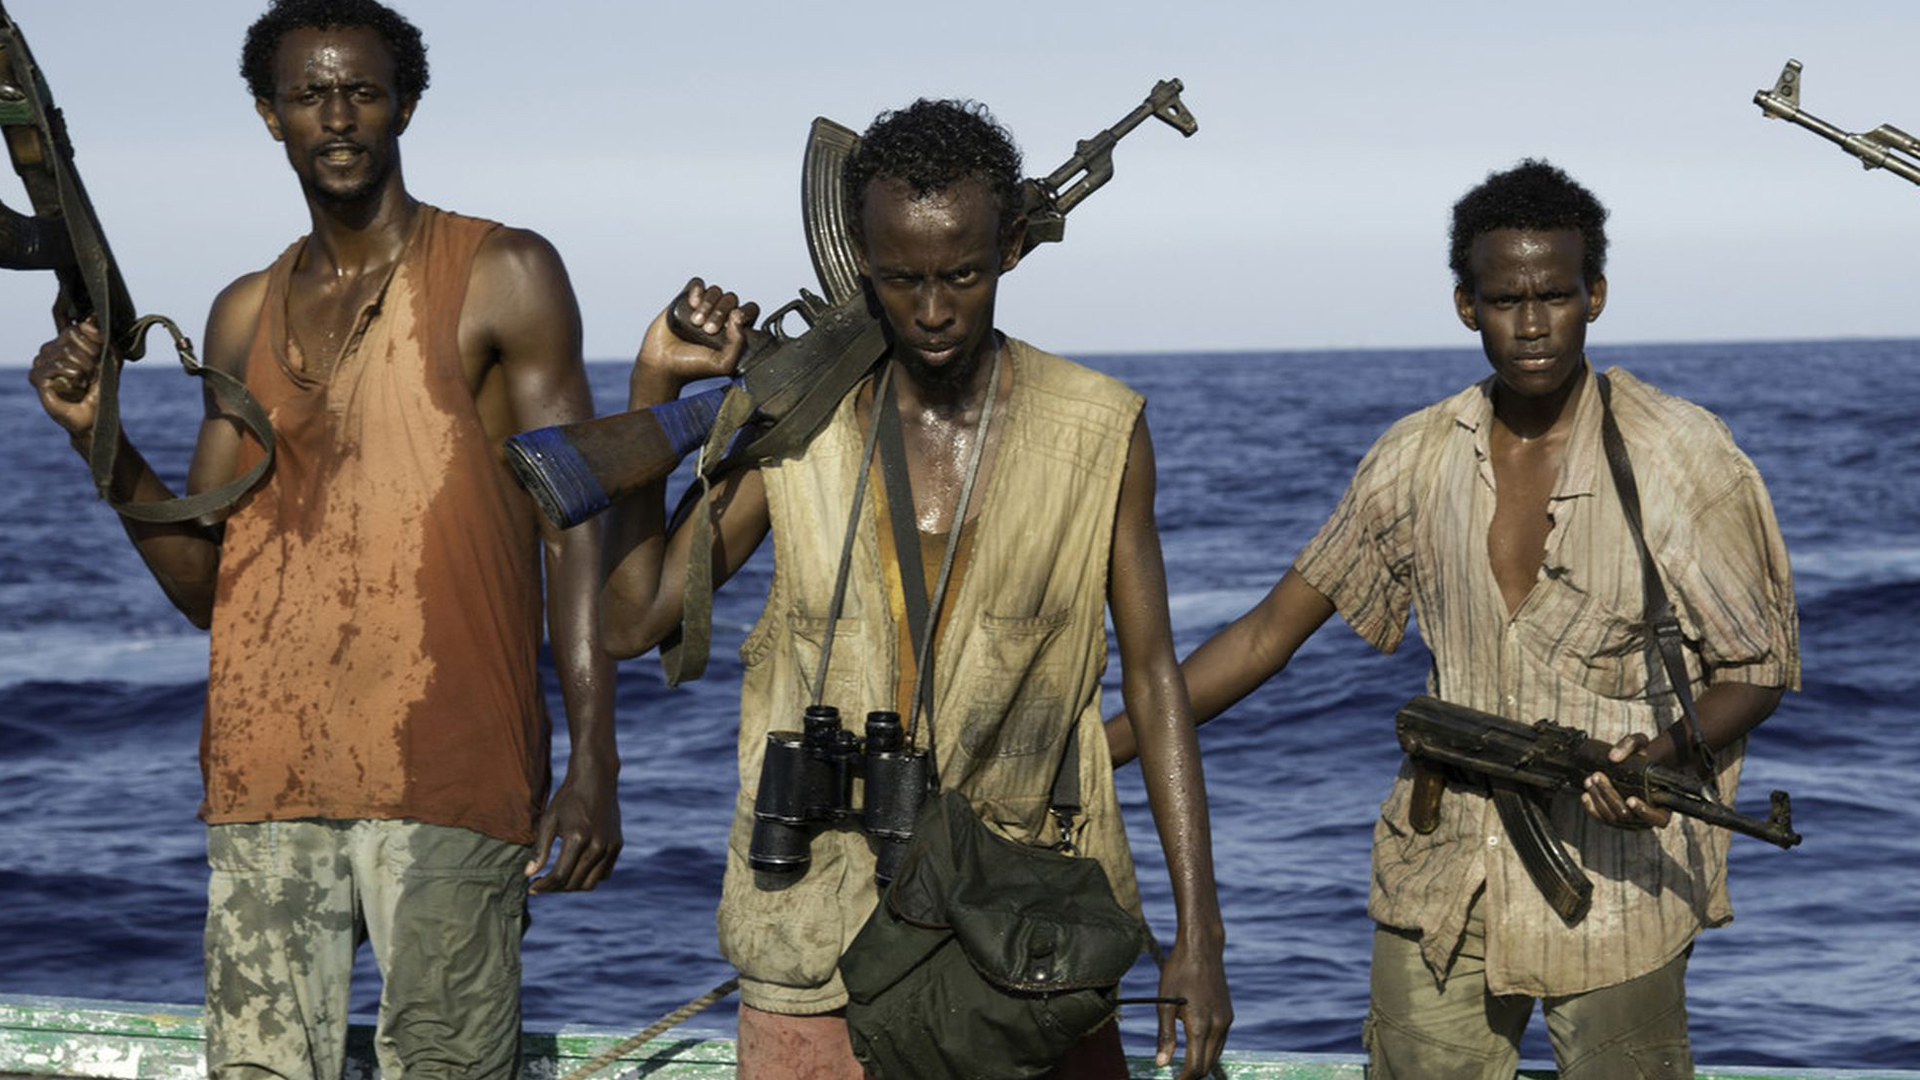 La famosa película "Captain Phillips", protagonizada por Tom Hanks, está basada en la experiencia que atravesó Richard Phillips cuando su barco fue secuestrado por piratas somalíes. (Archivo DEF)